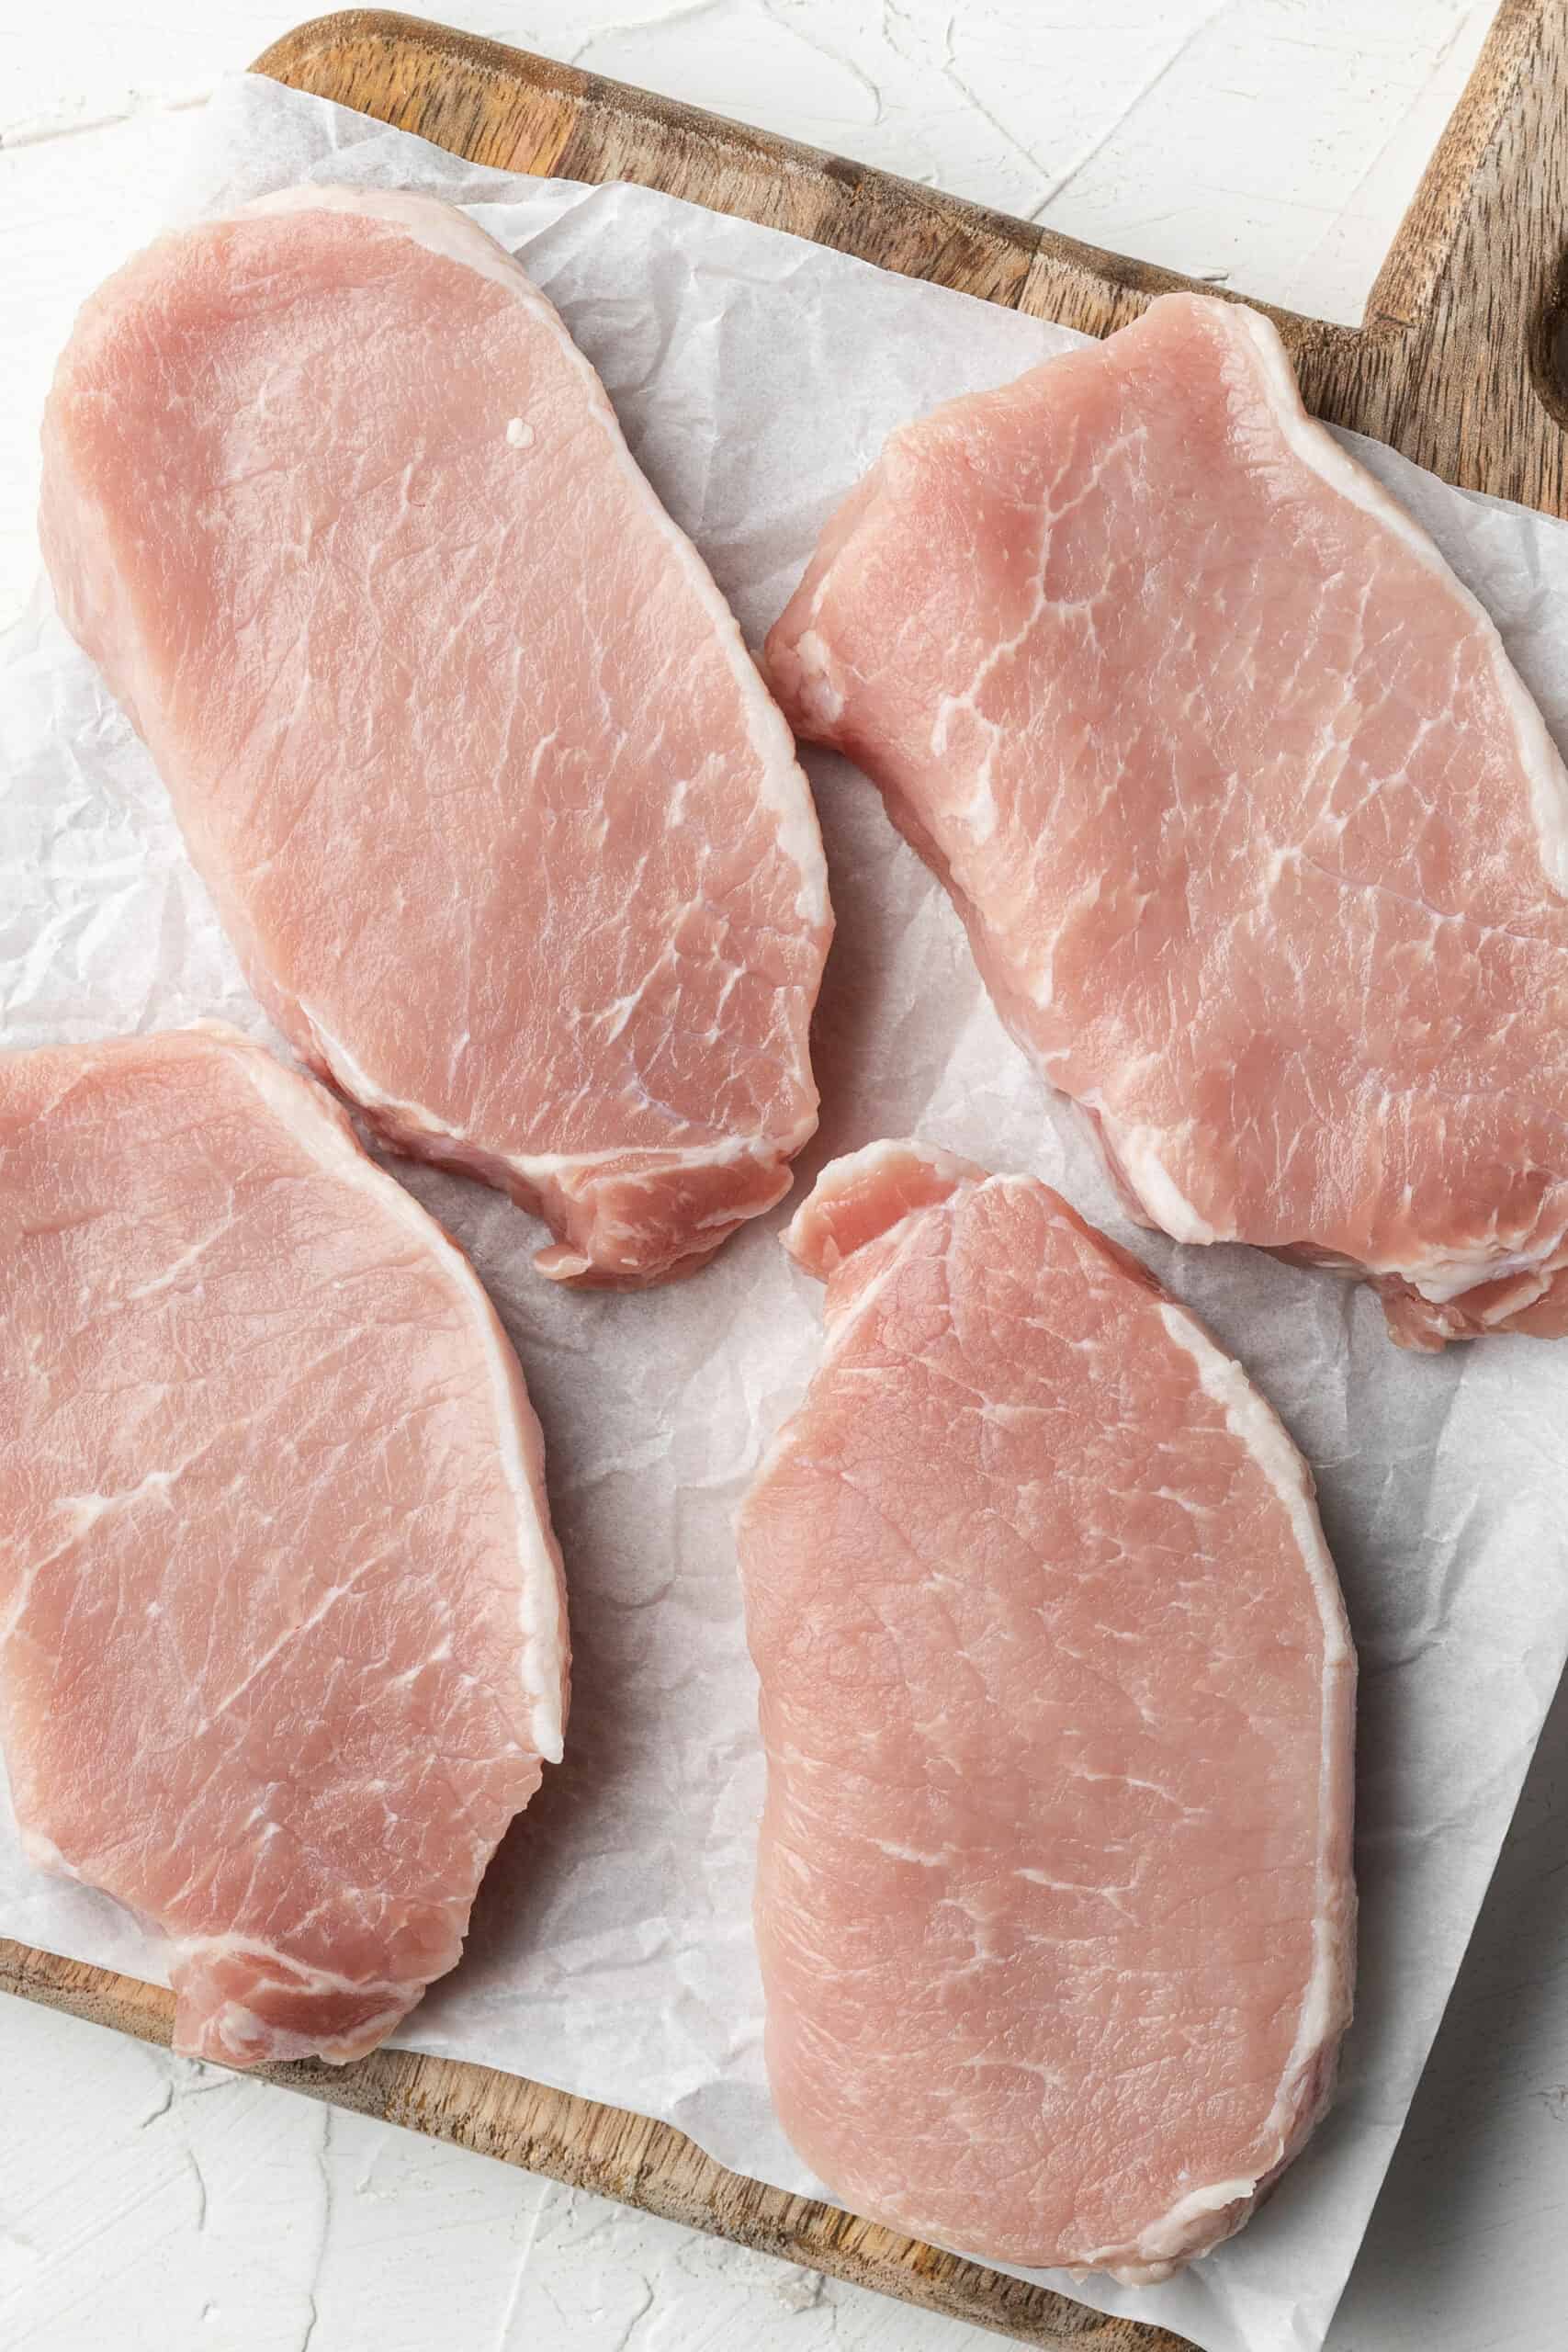 Raw pork chops on a cutting board.